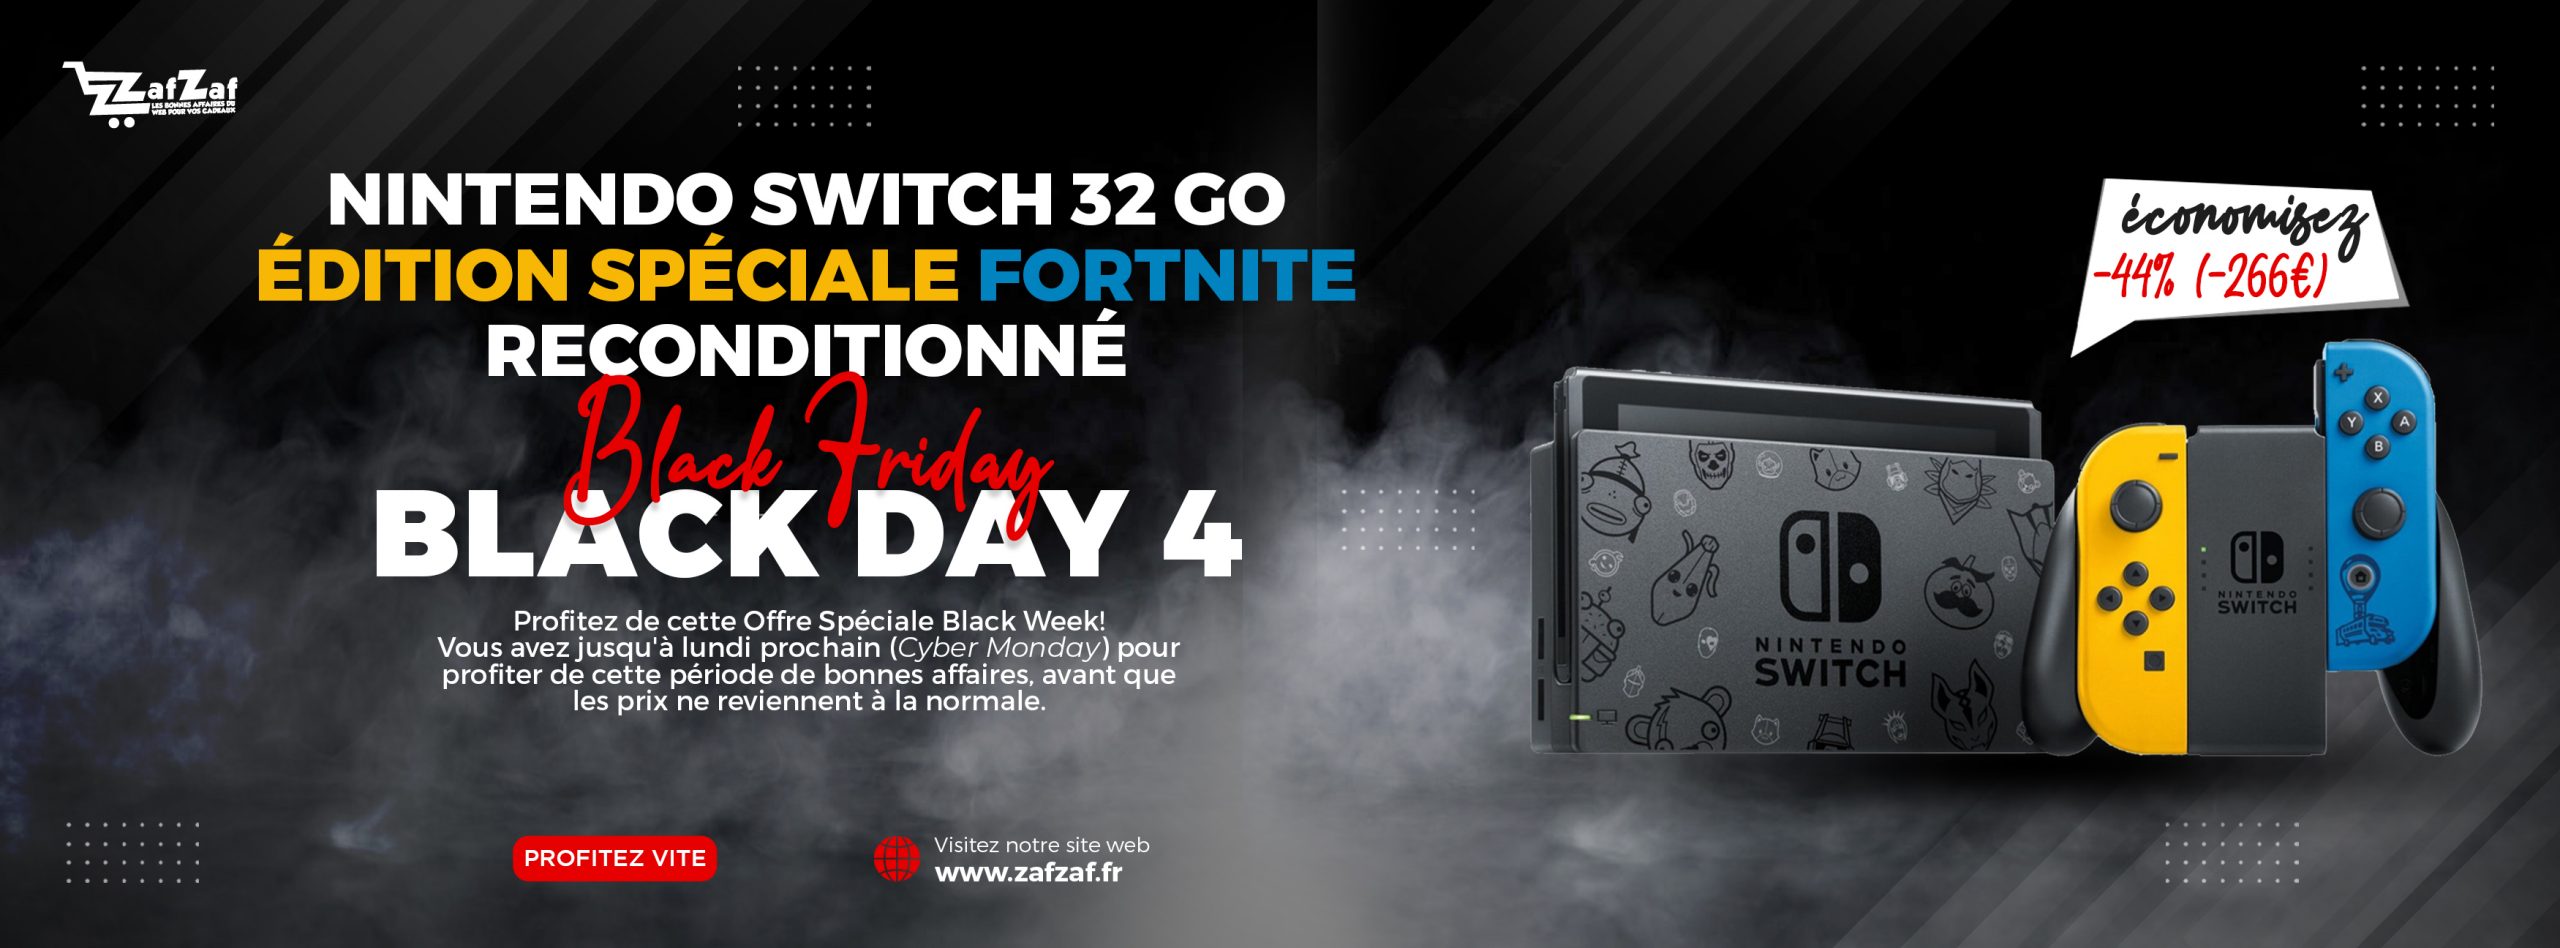 BLACK DAY 4 - Nintendo Switch Noir 32 Go Reconditionné Édition spéciale Fortnite